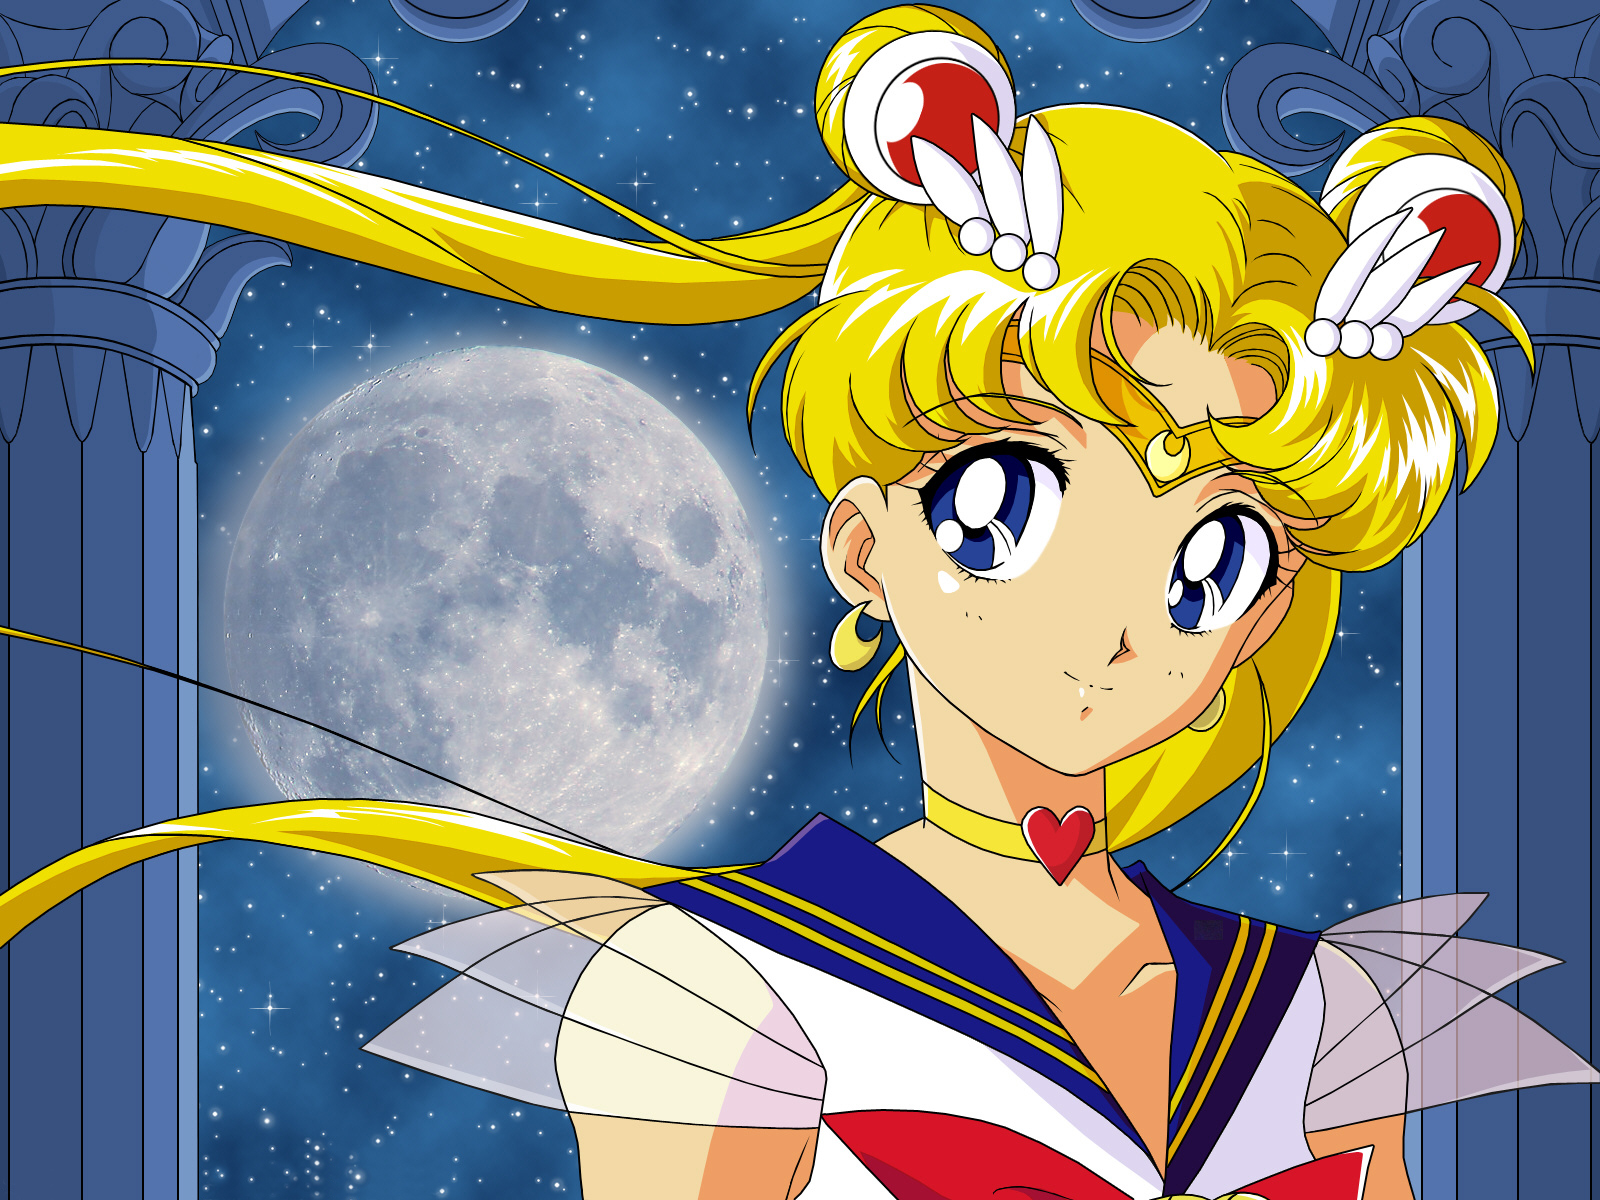 Wallpapers de Sailor Moon ~ Nitro web